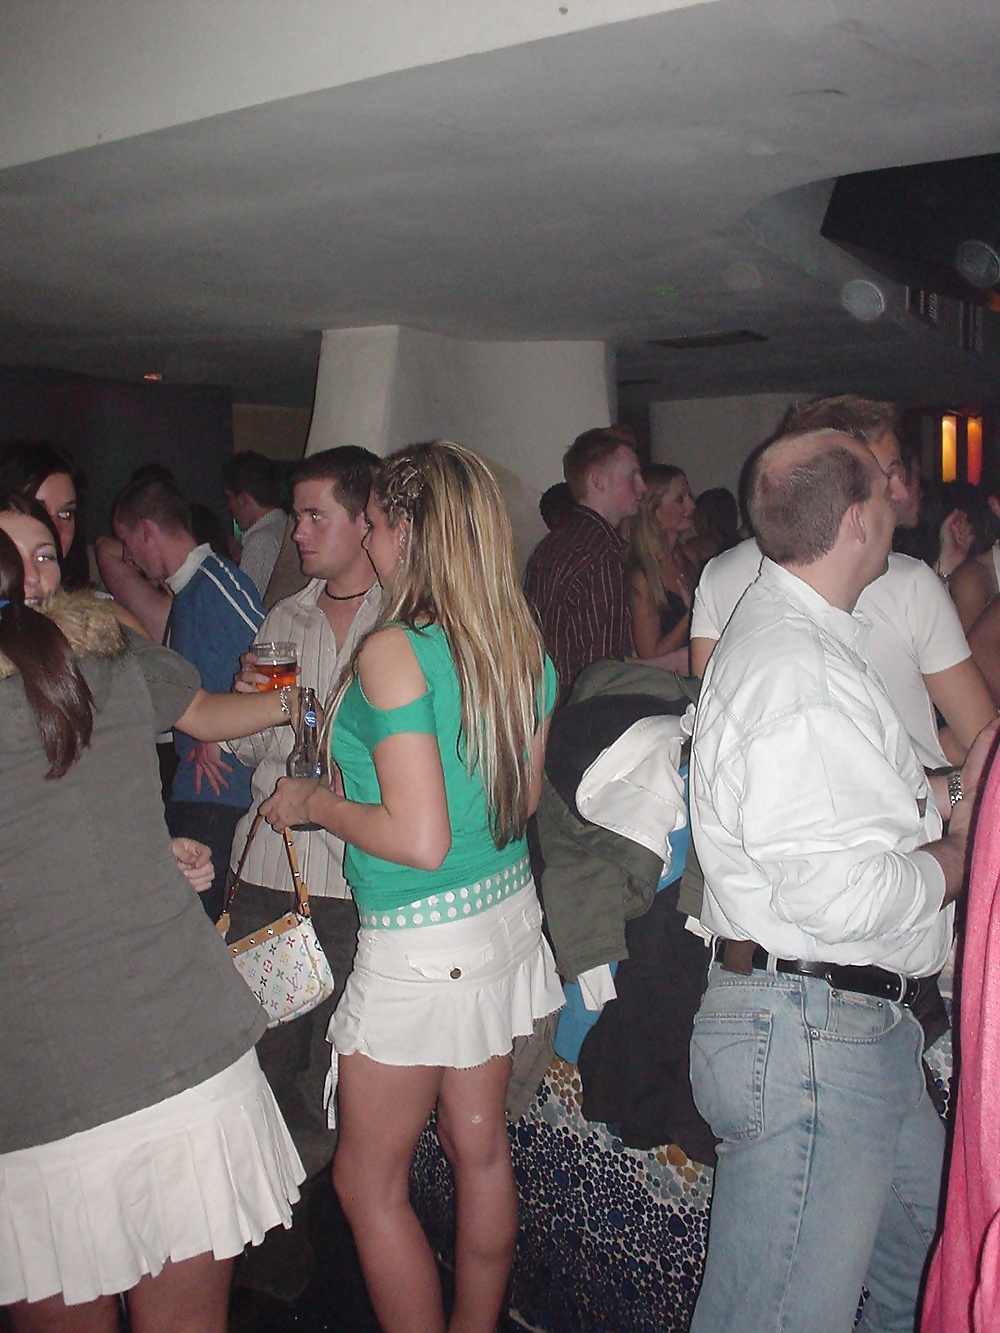 Nightclub Sluts Upskirted #30020971